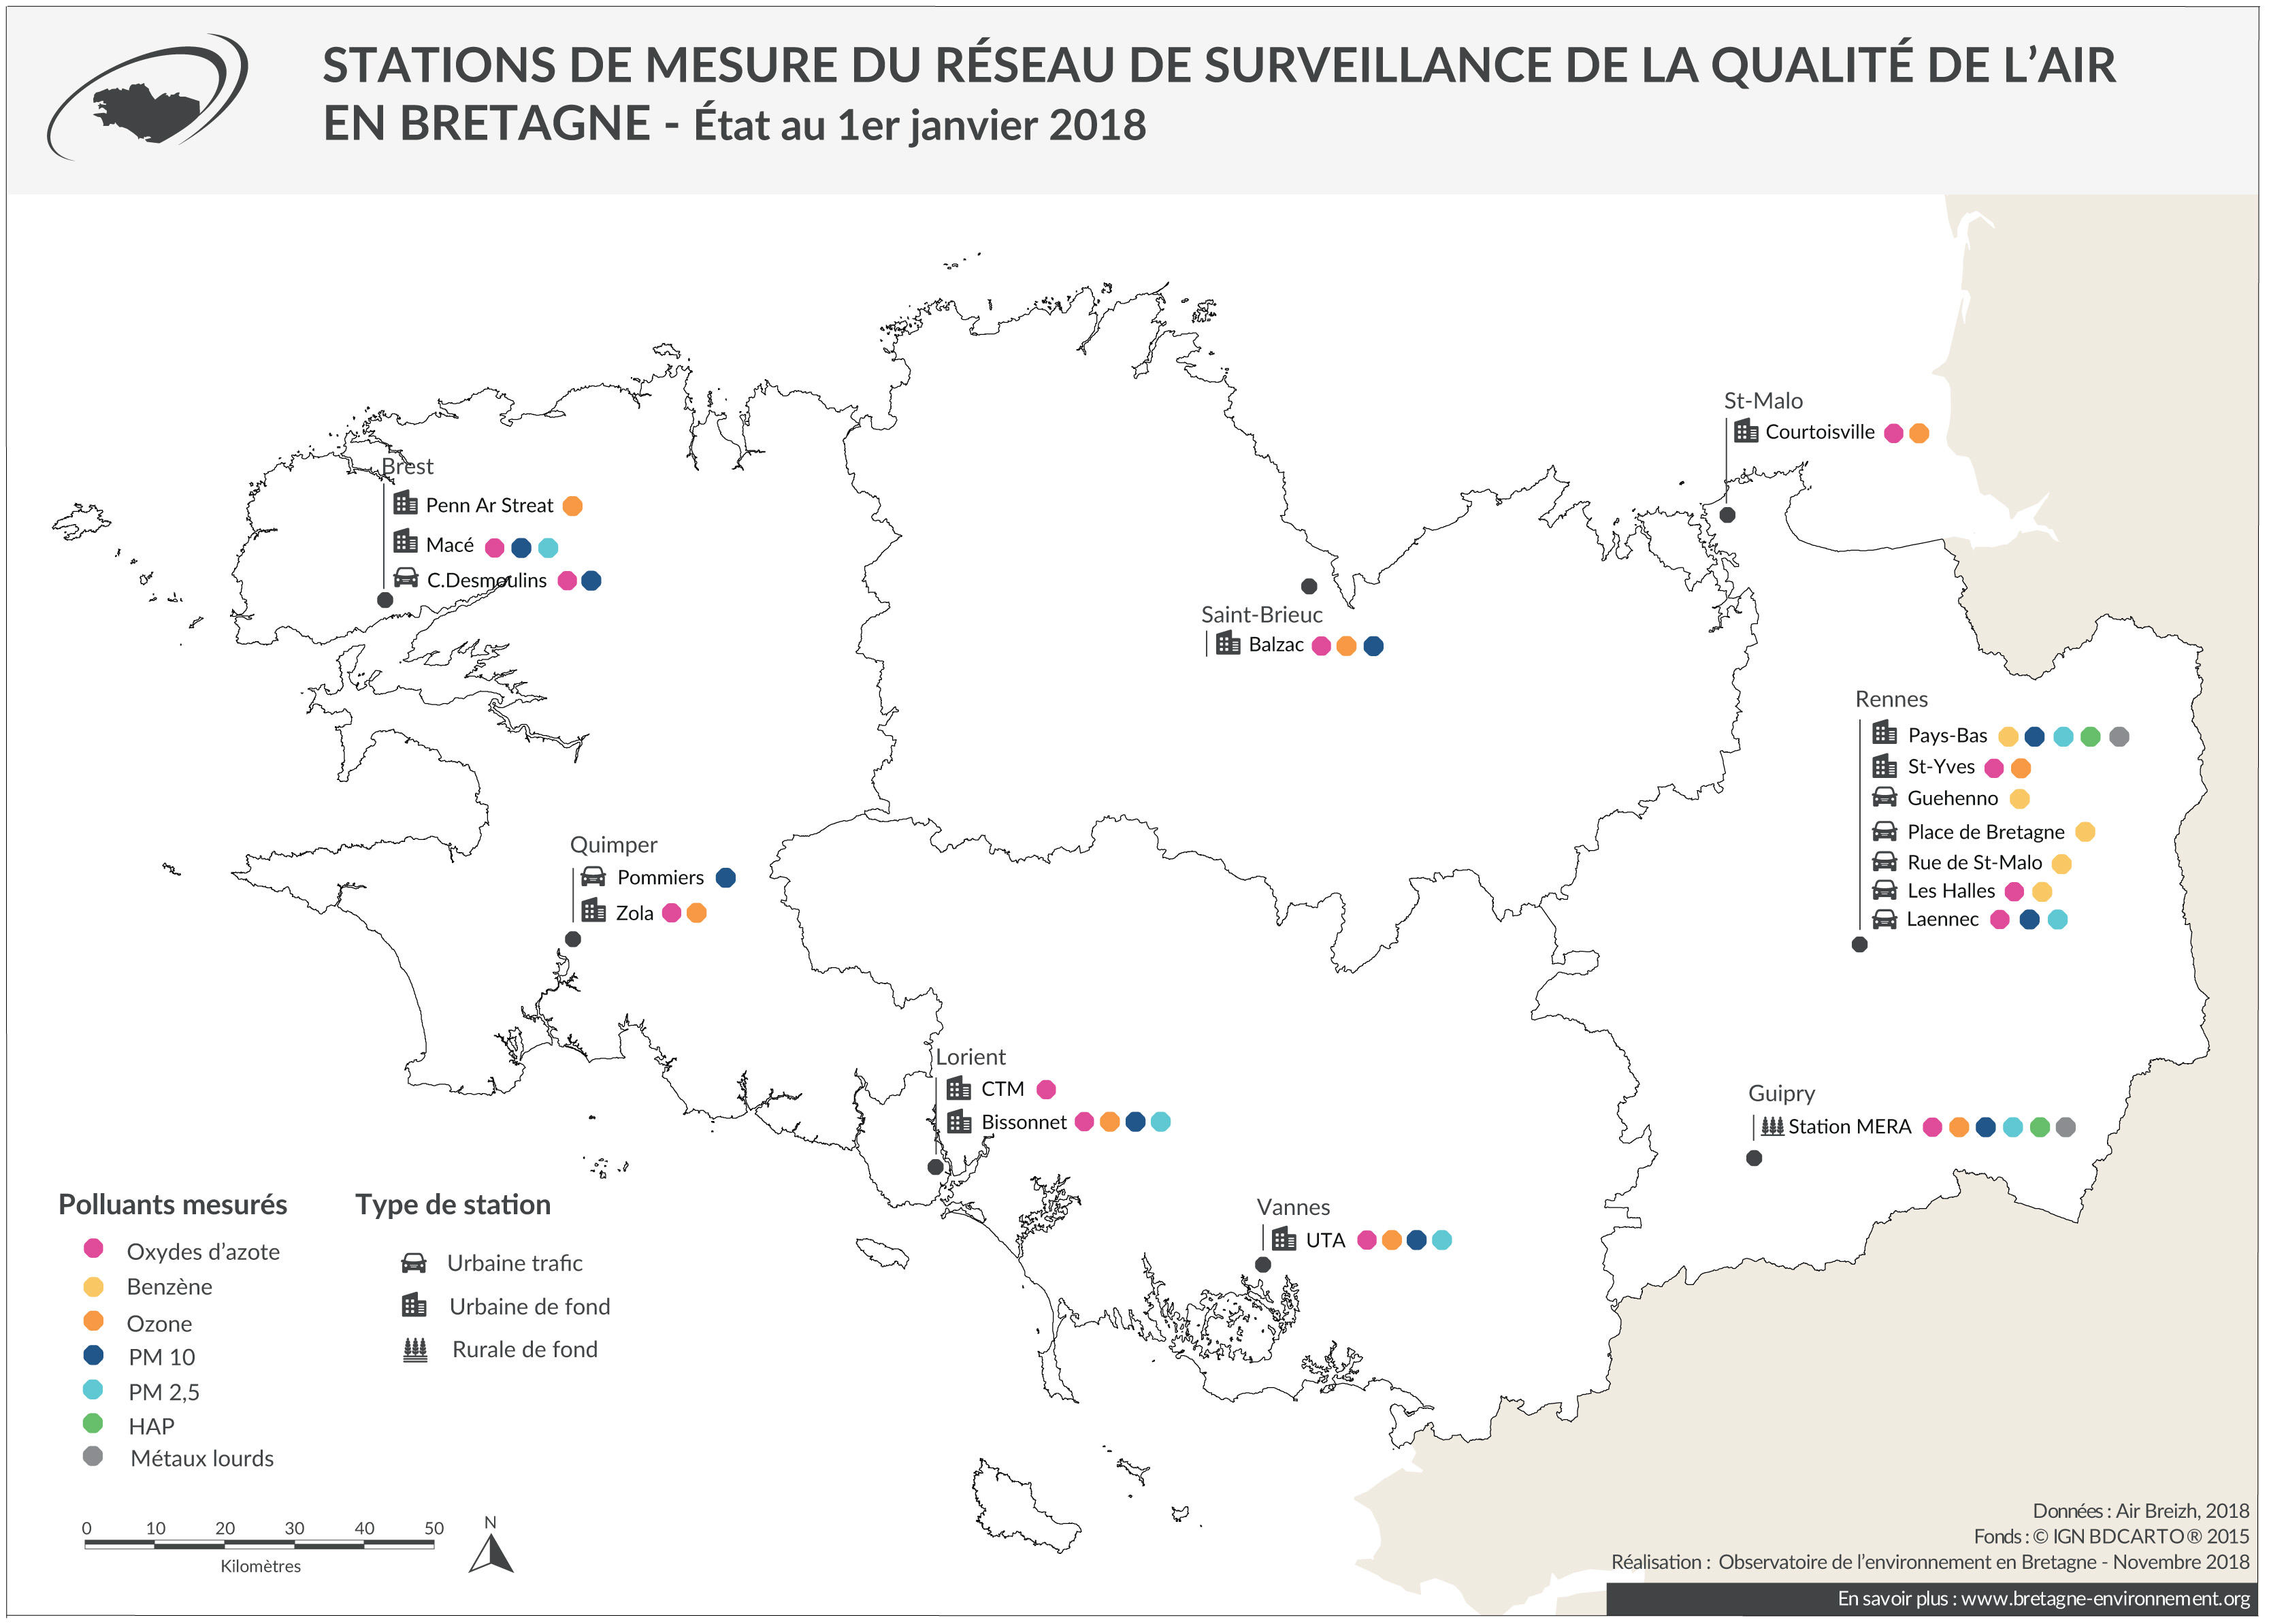 Stations de mesure du réseau de surveillance de l'air en Bretagne - Janvier 2018